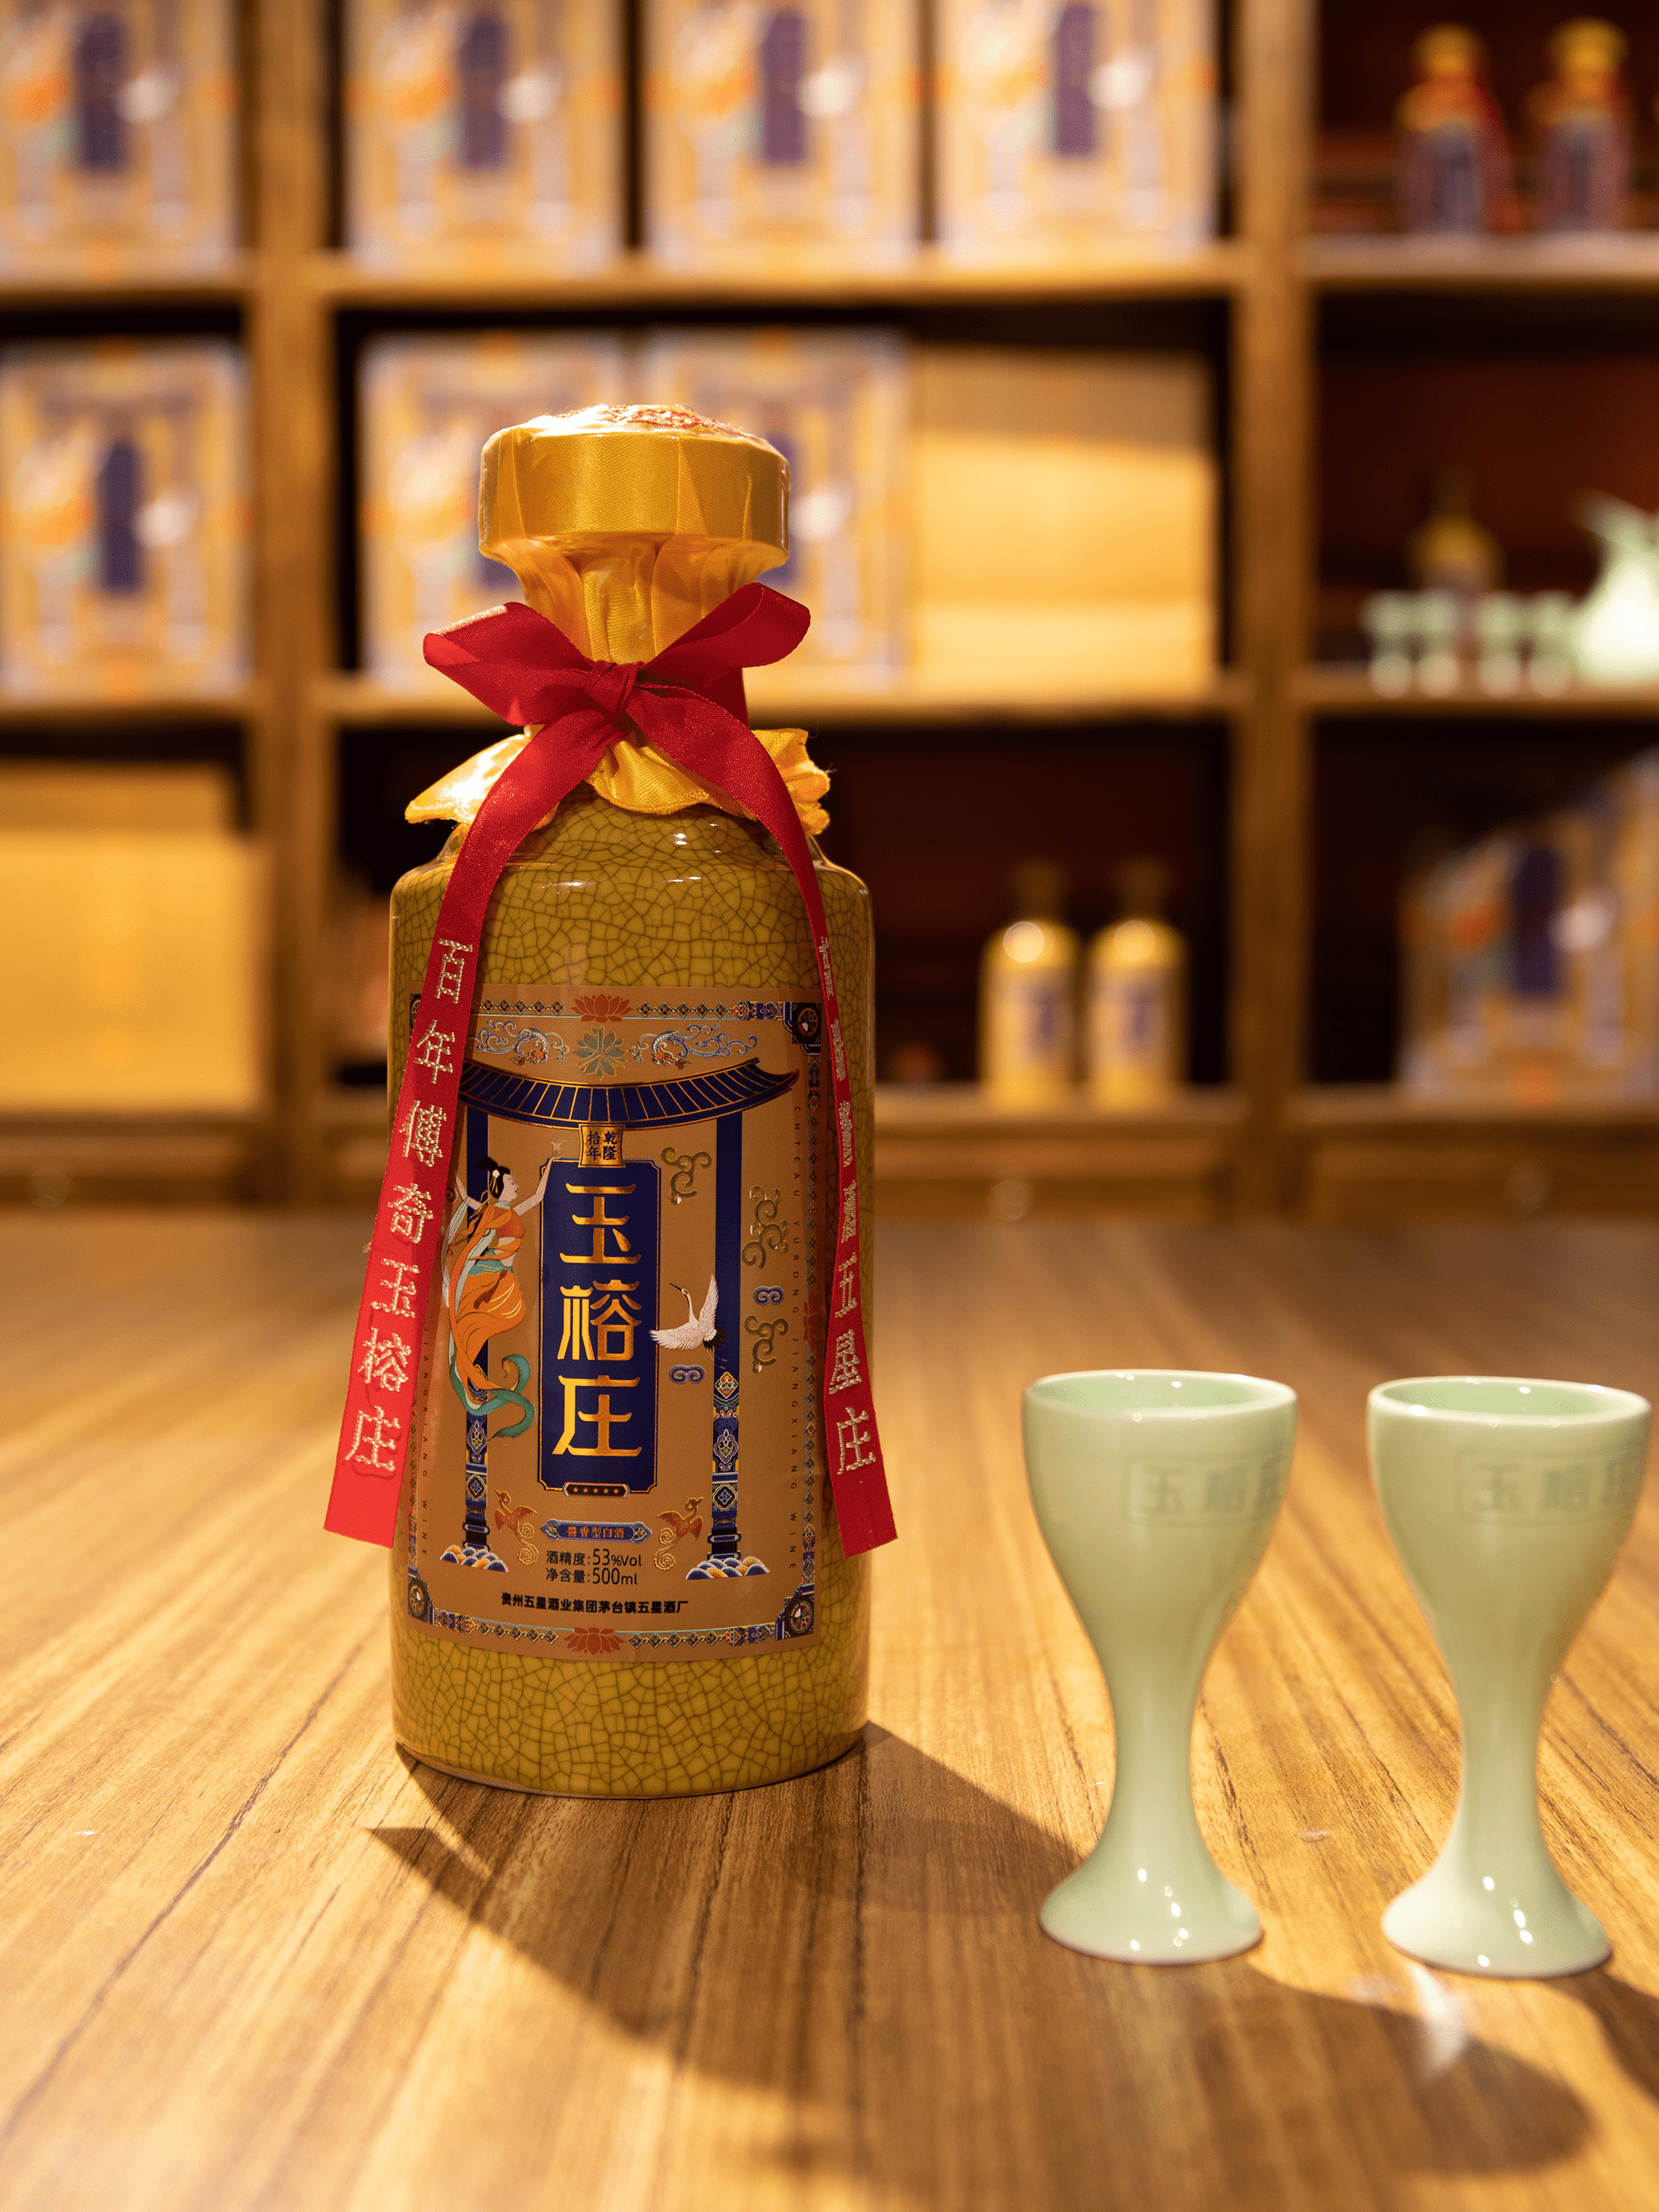 贵州茅台镇五星酒业准高端市场打造百年传奇玉榕庄被誉为中国酱酒壹号